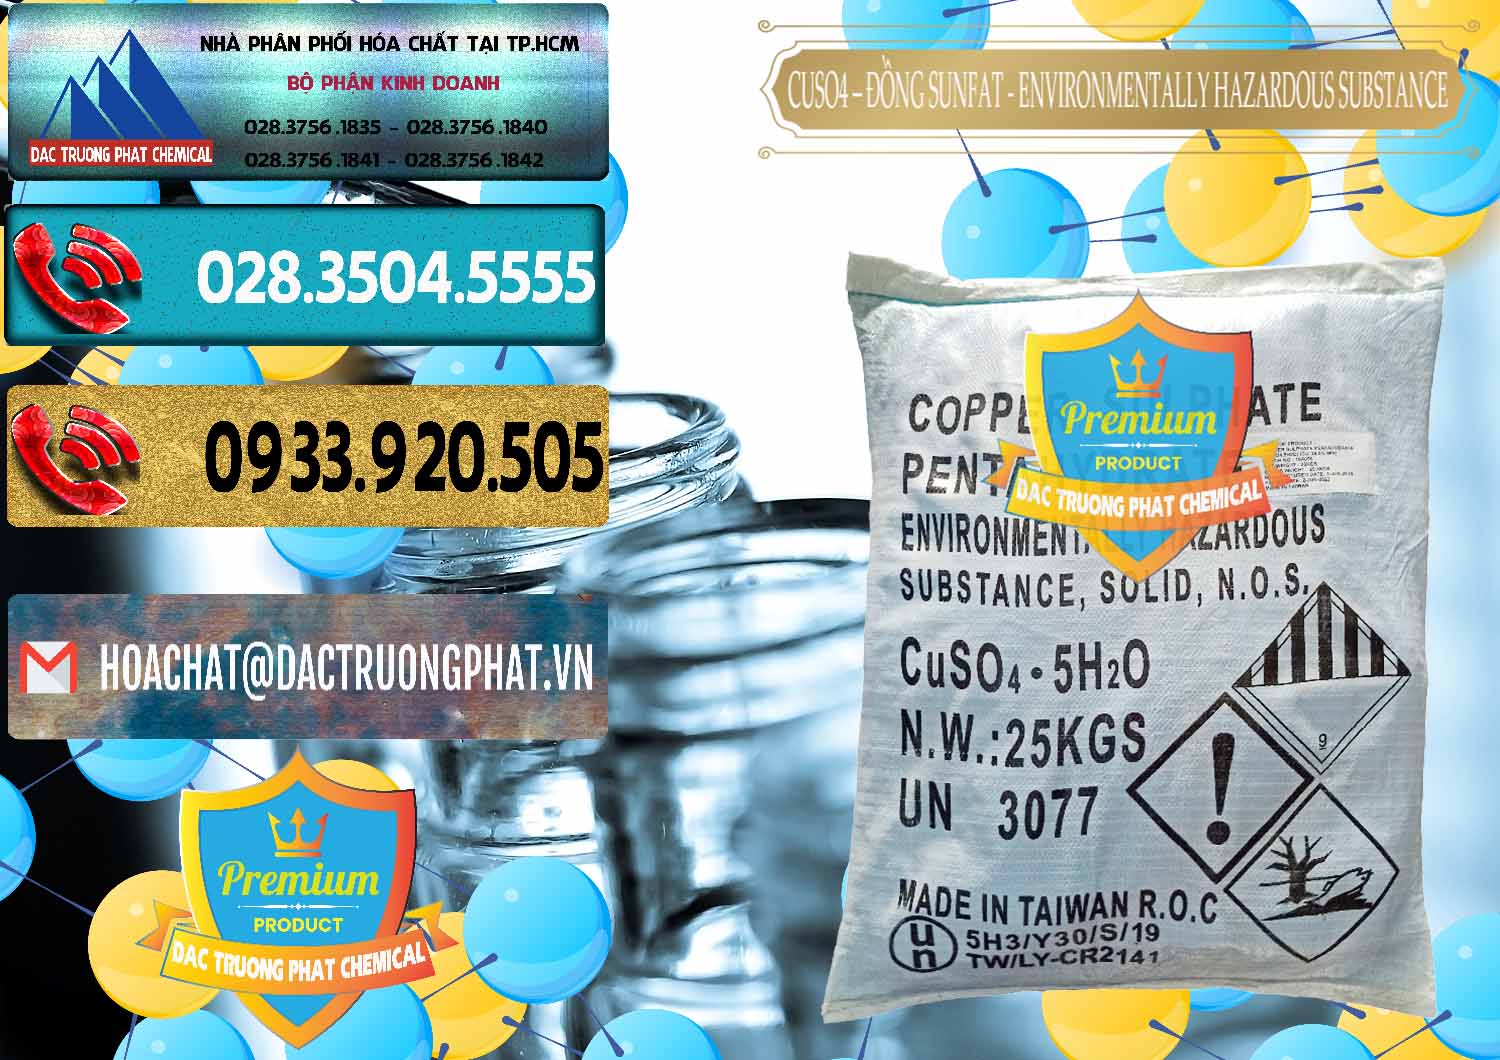 Cung cấp ( bán ) CuSO4 – Đồng Sunfat Đài Loan Taiwan - 0059 - Cty cung cấp - phân phối hóa chất tại TP.HCM - hoachatdetnhuom.com